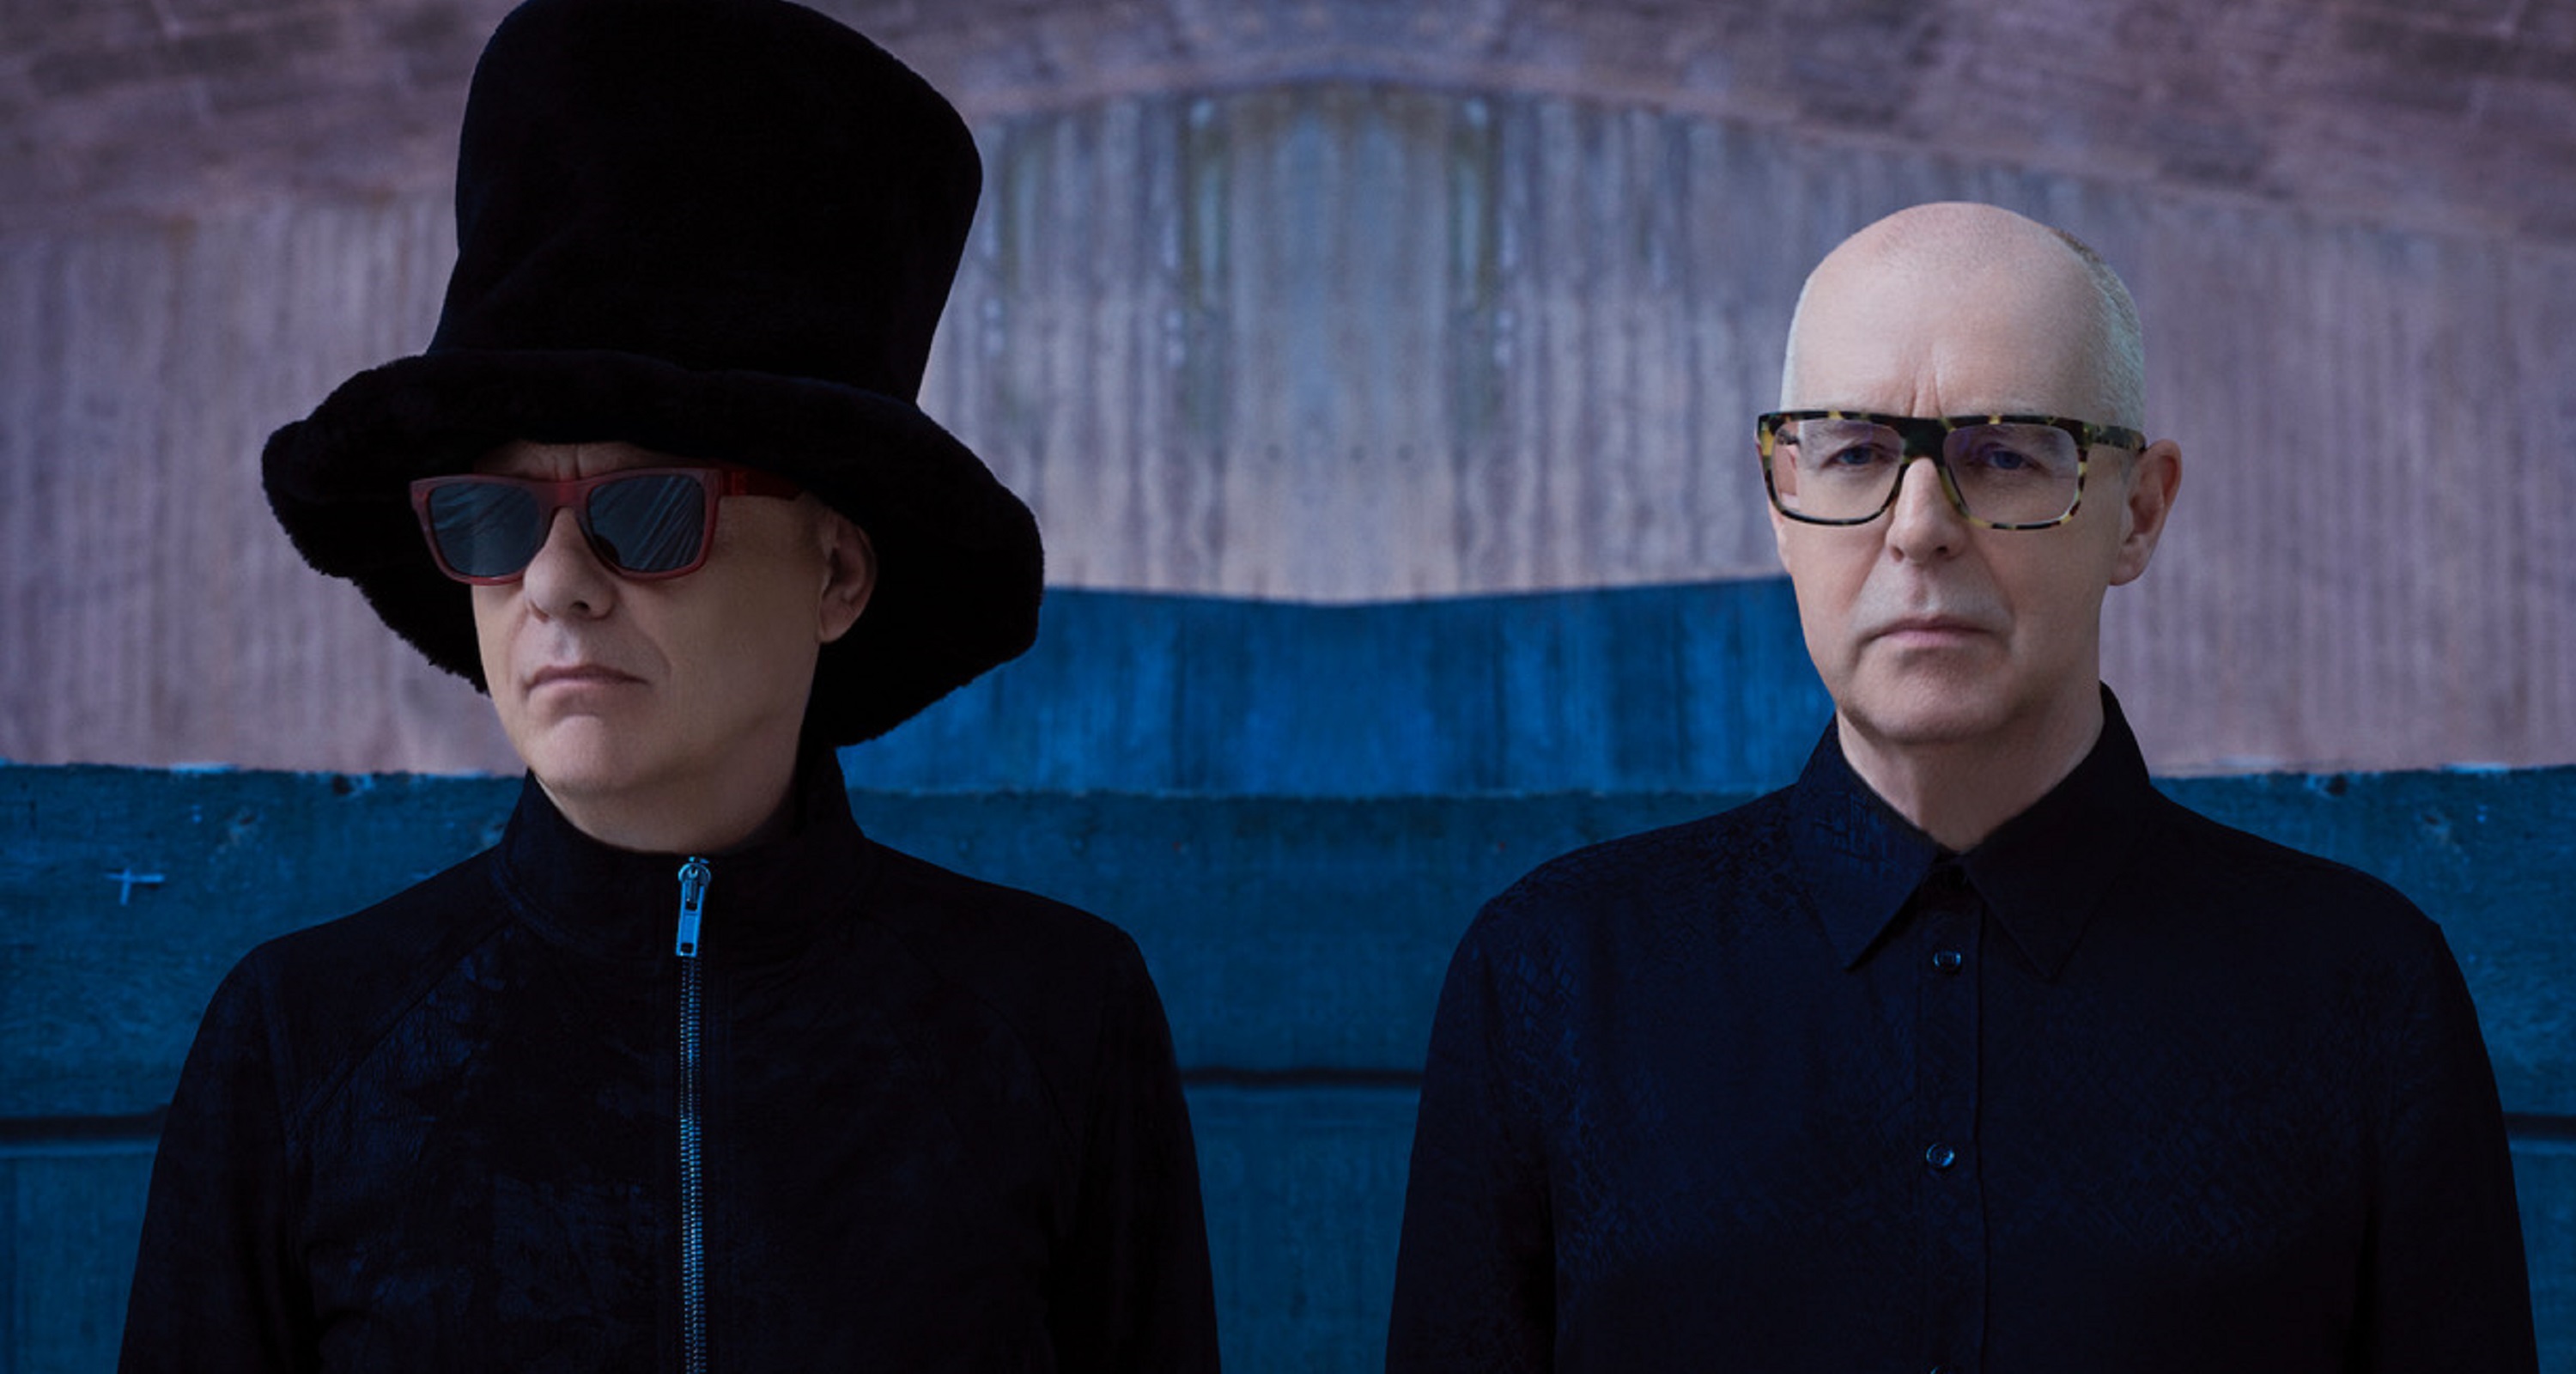 Pet Shop Bops review: 'Britain's most successful pop duo leave you